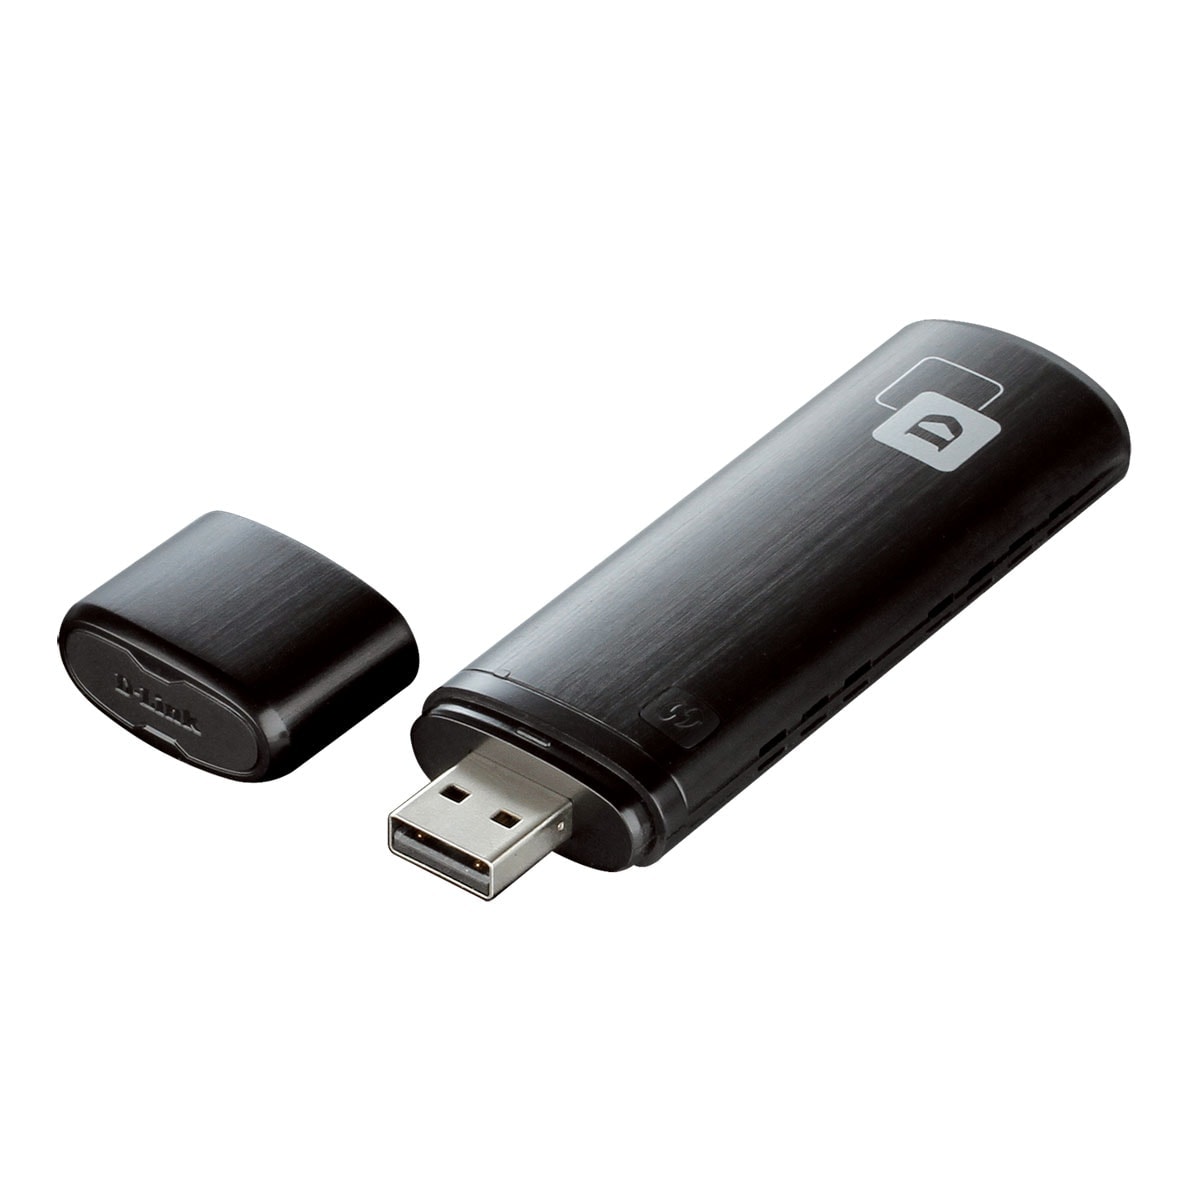 D-Link Clé USB WiFi AC 1200 DWA-182 - Carte réseau D-Link - 0